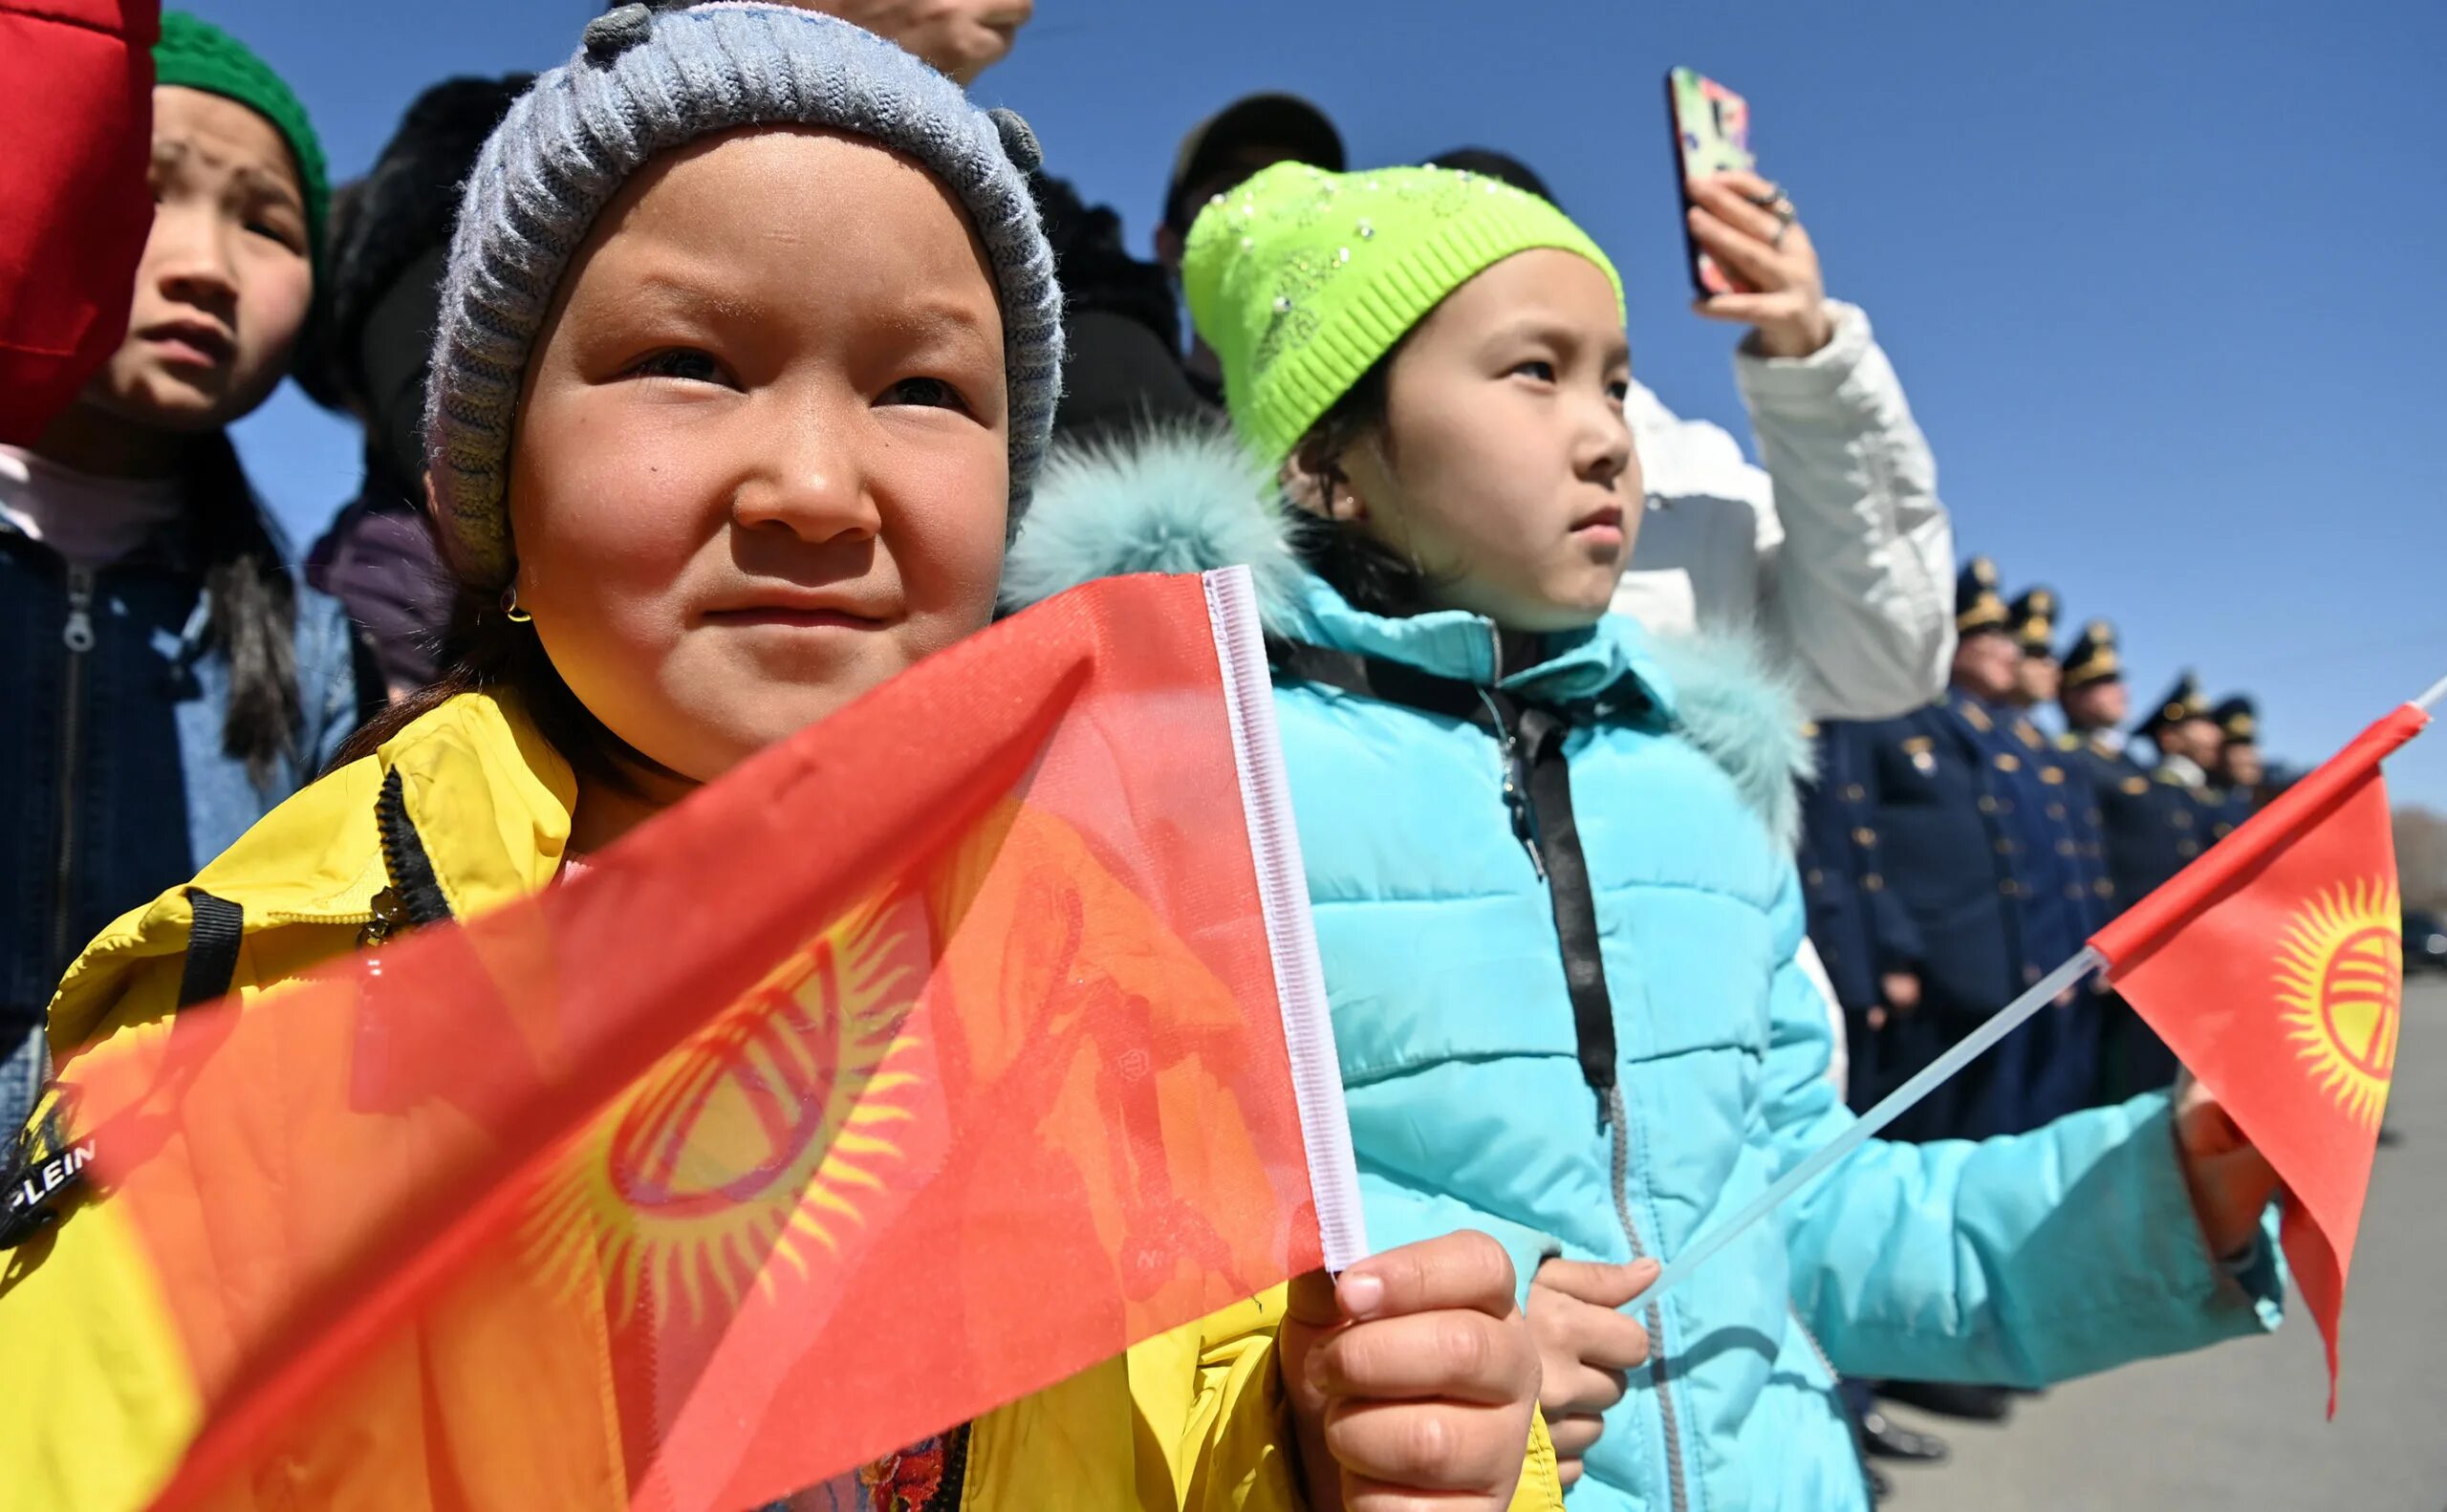 Обретение независимости Республики Кыргызстан. Киргизия или Кыргызстан. Праздники Кыргызстана. Кыргызстан после обретения независимости. Кыргызстан это киргизия или нет